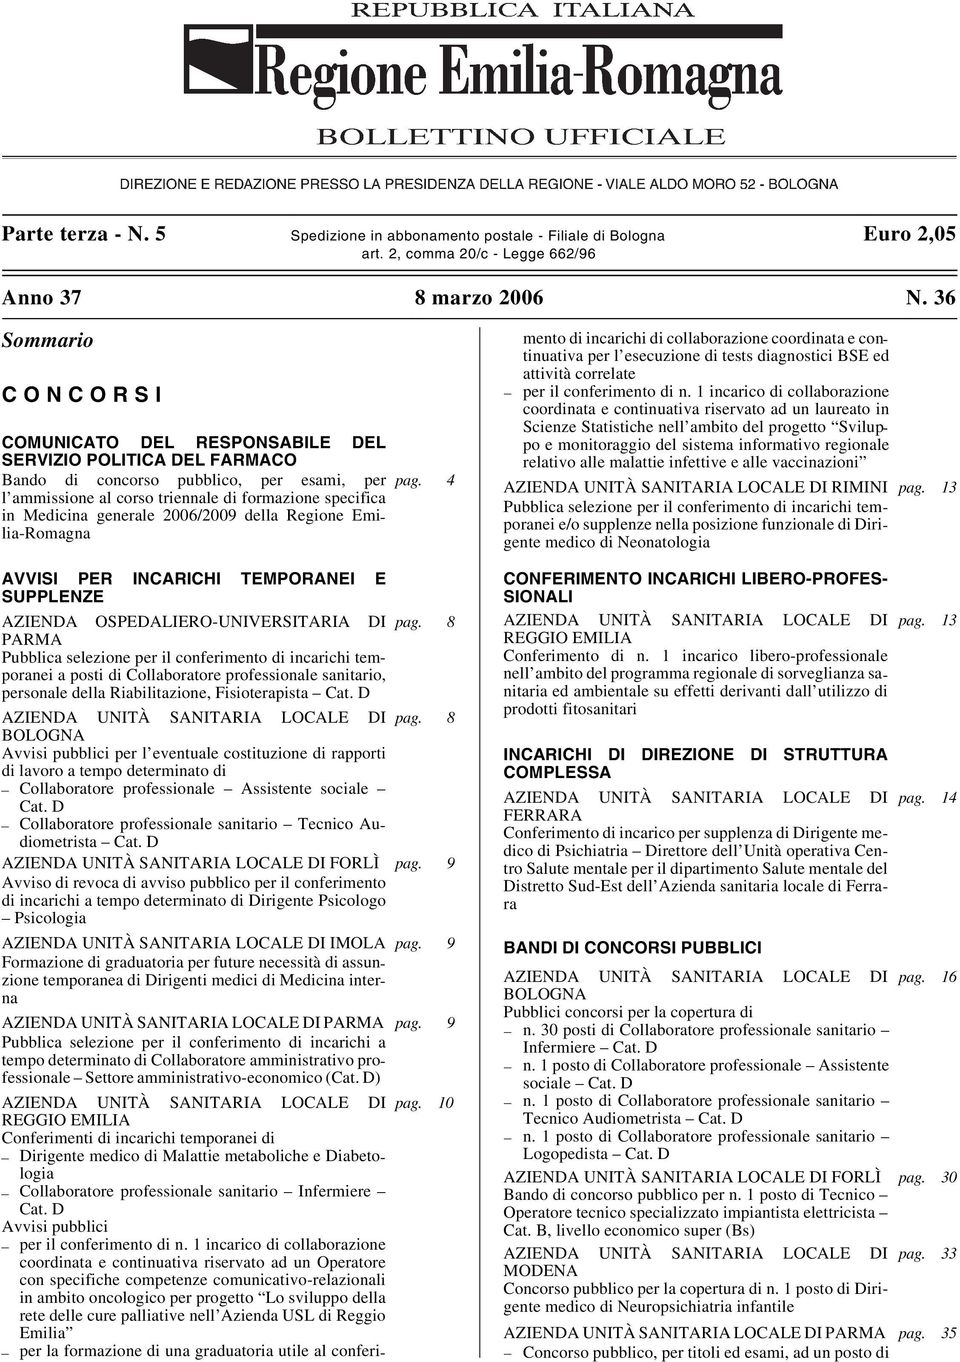 4 l ammissione al corso triennale di formazione specifica in Medicina generale 2006/2009 della Regione Emilia-Romagna AVVISI PER INCARICHI TEMPORANEI E SUPPLENZE AZIENDA OSPEDALIERO-UNIVERSITARIA DI